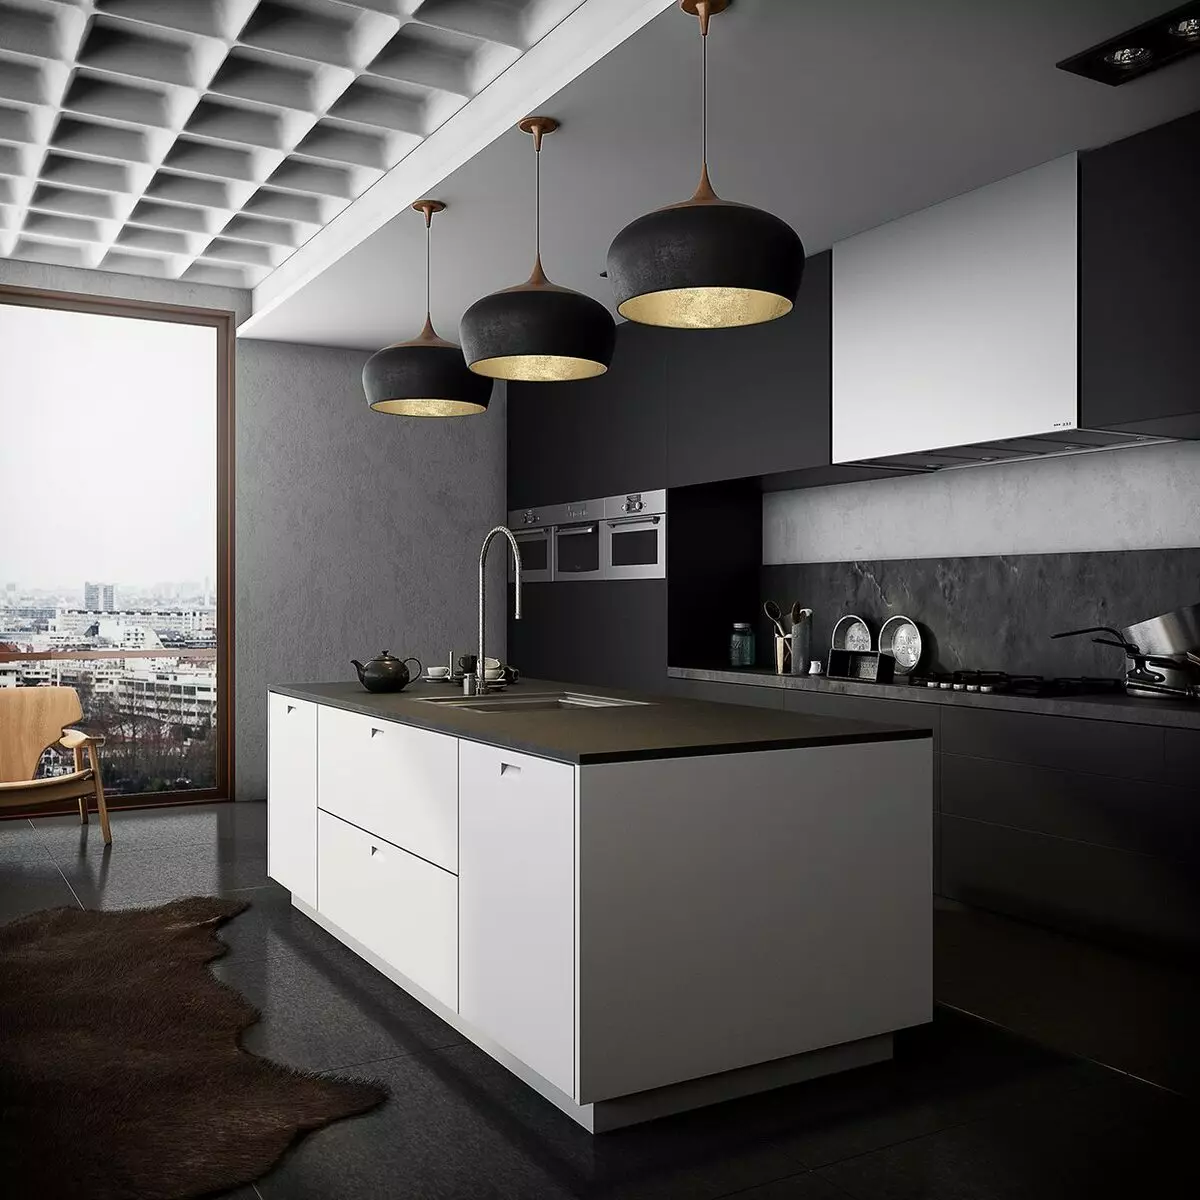 آشپزخانه سیاه (100 عکس): آشپزخانه مخملی سیاه و سفید با چوب در طراحی داخلی، مات و آشپزخانه براق در رنگ های خاکستری سیاه و سفید، طراحی دیوار سیاه 21175_33